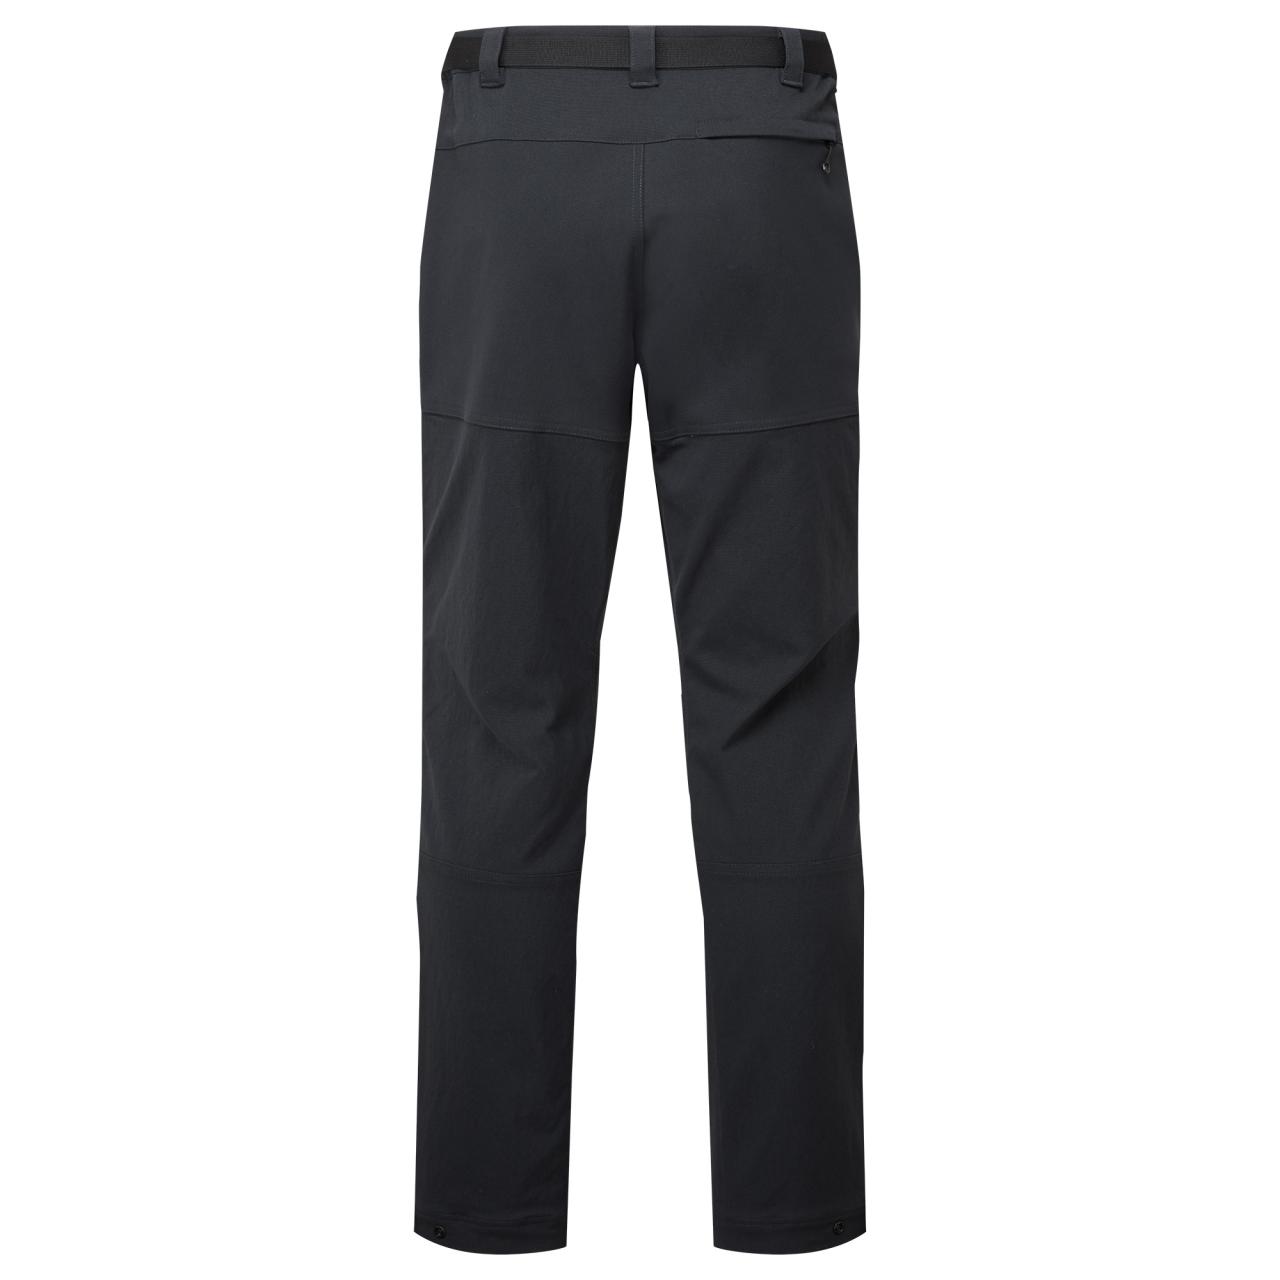 TERRA XT PANTS REG LEG-BLACK-32/M pánské kalhoty černé